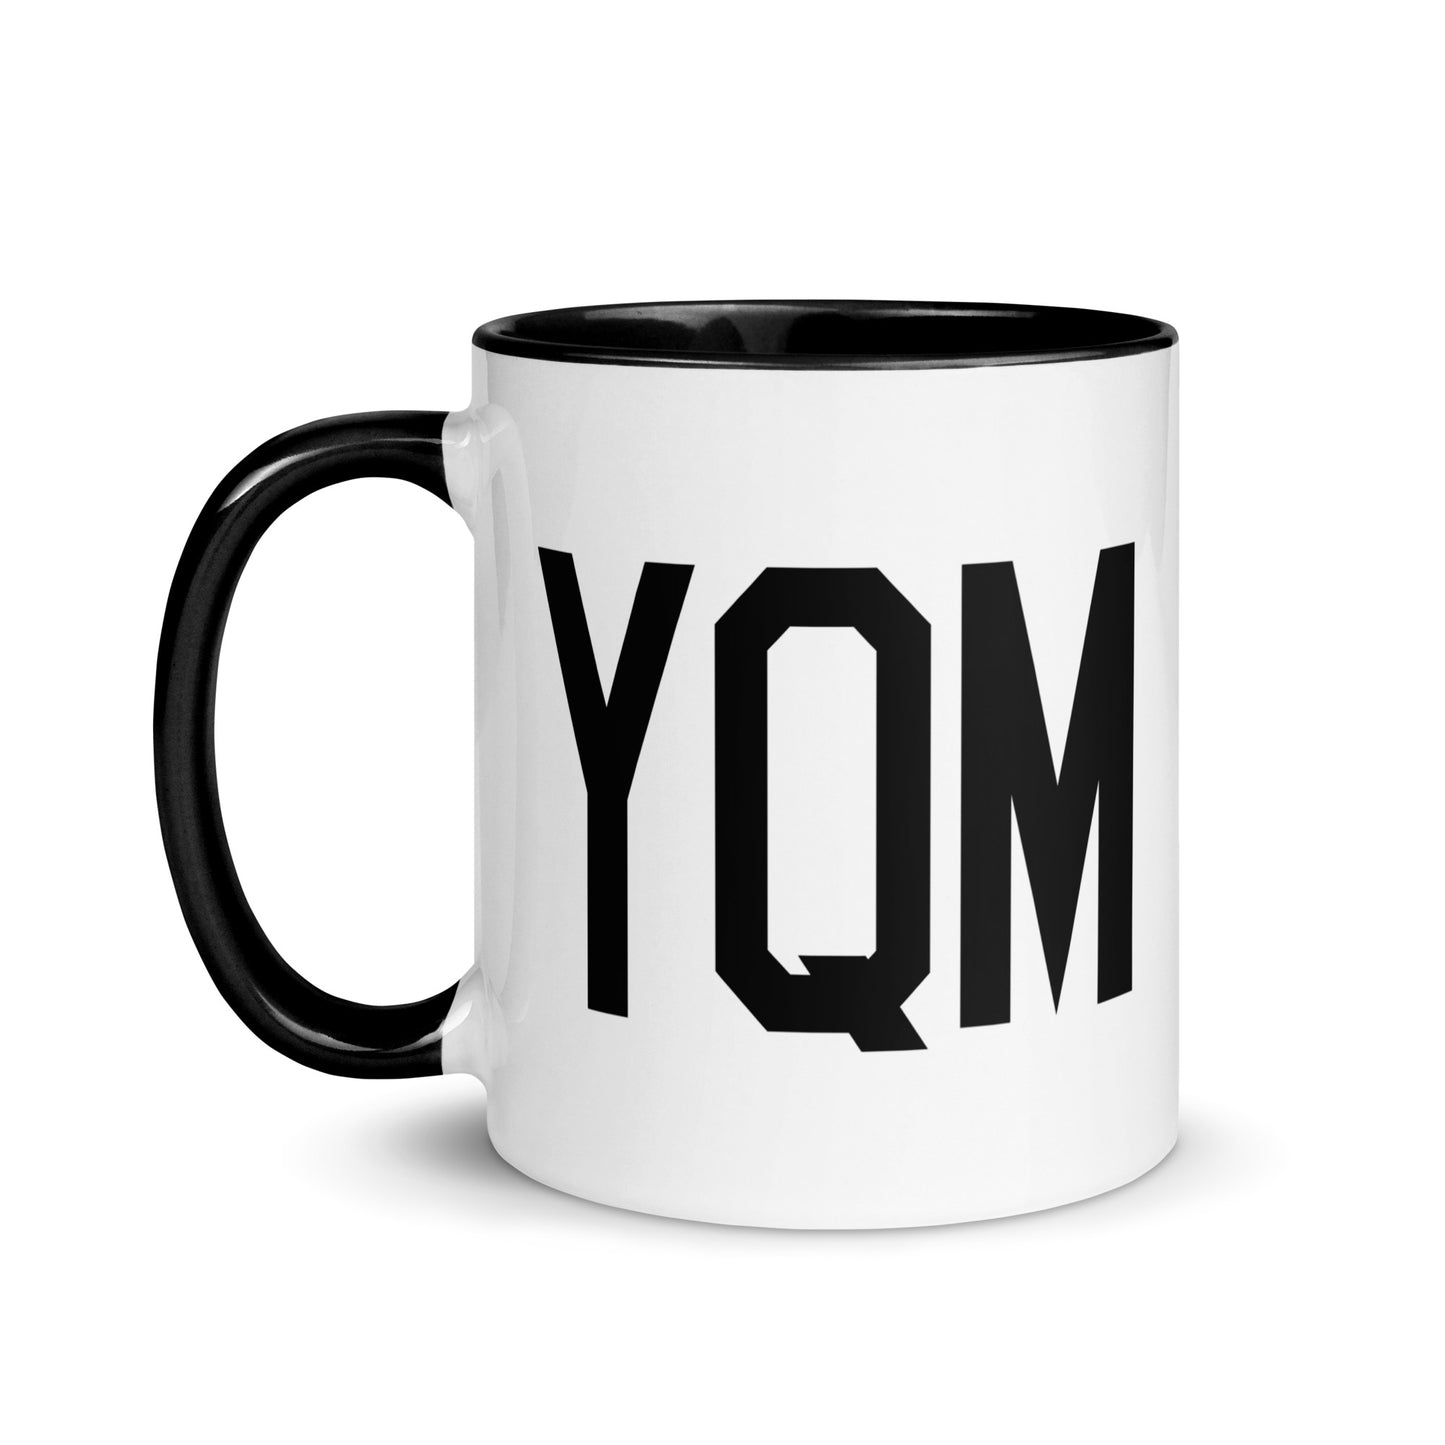 Aviation-Theme Coffee Mug - Black • YQM Moncton • YHM Designs - Image 03